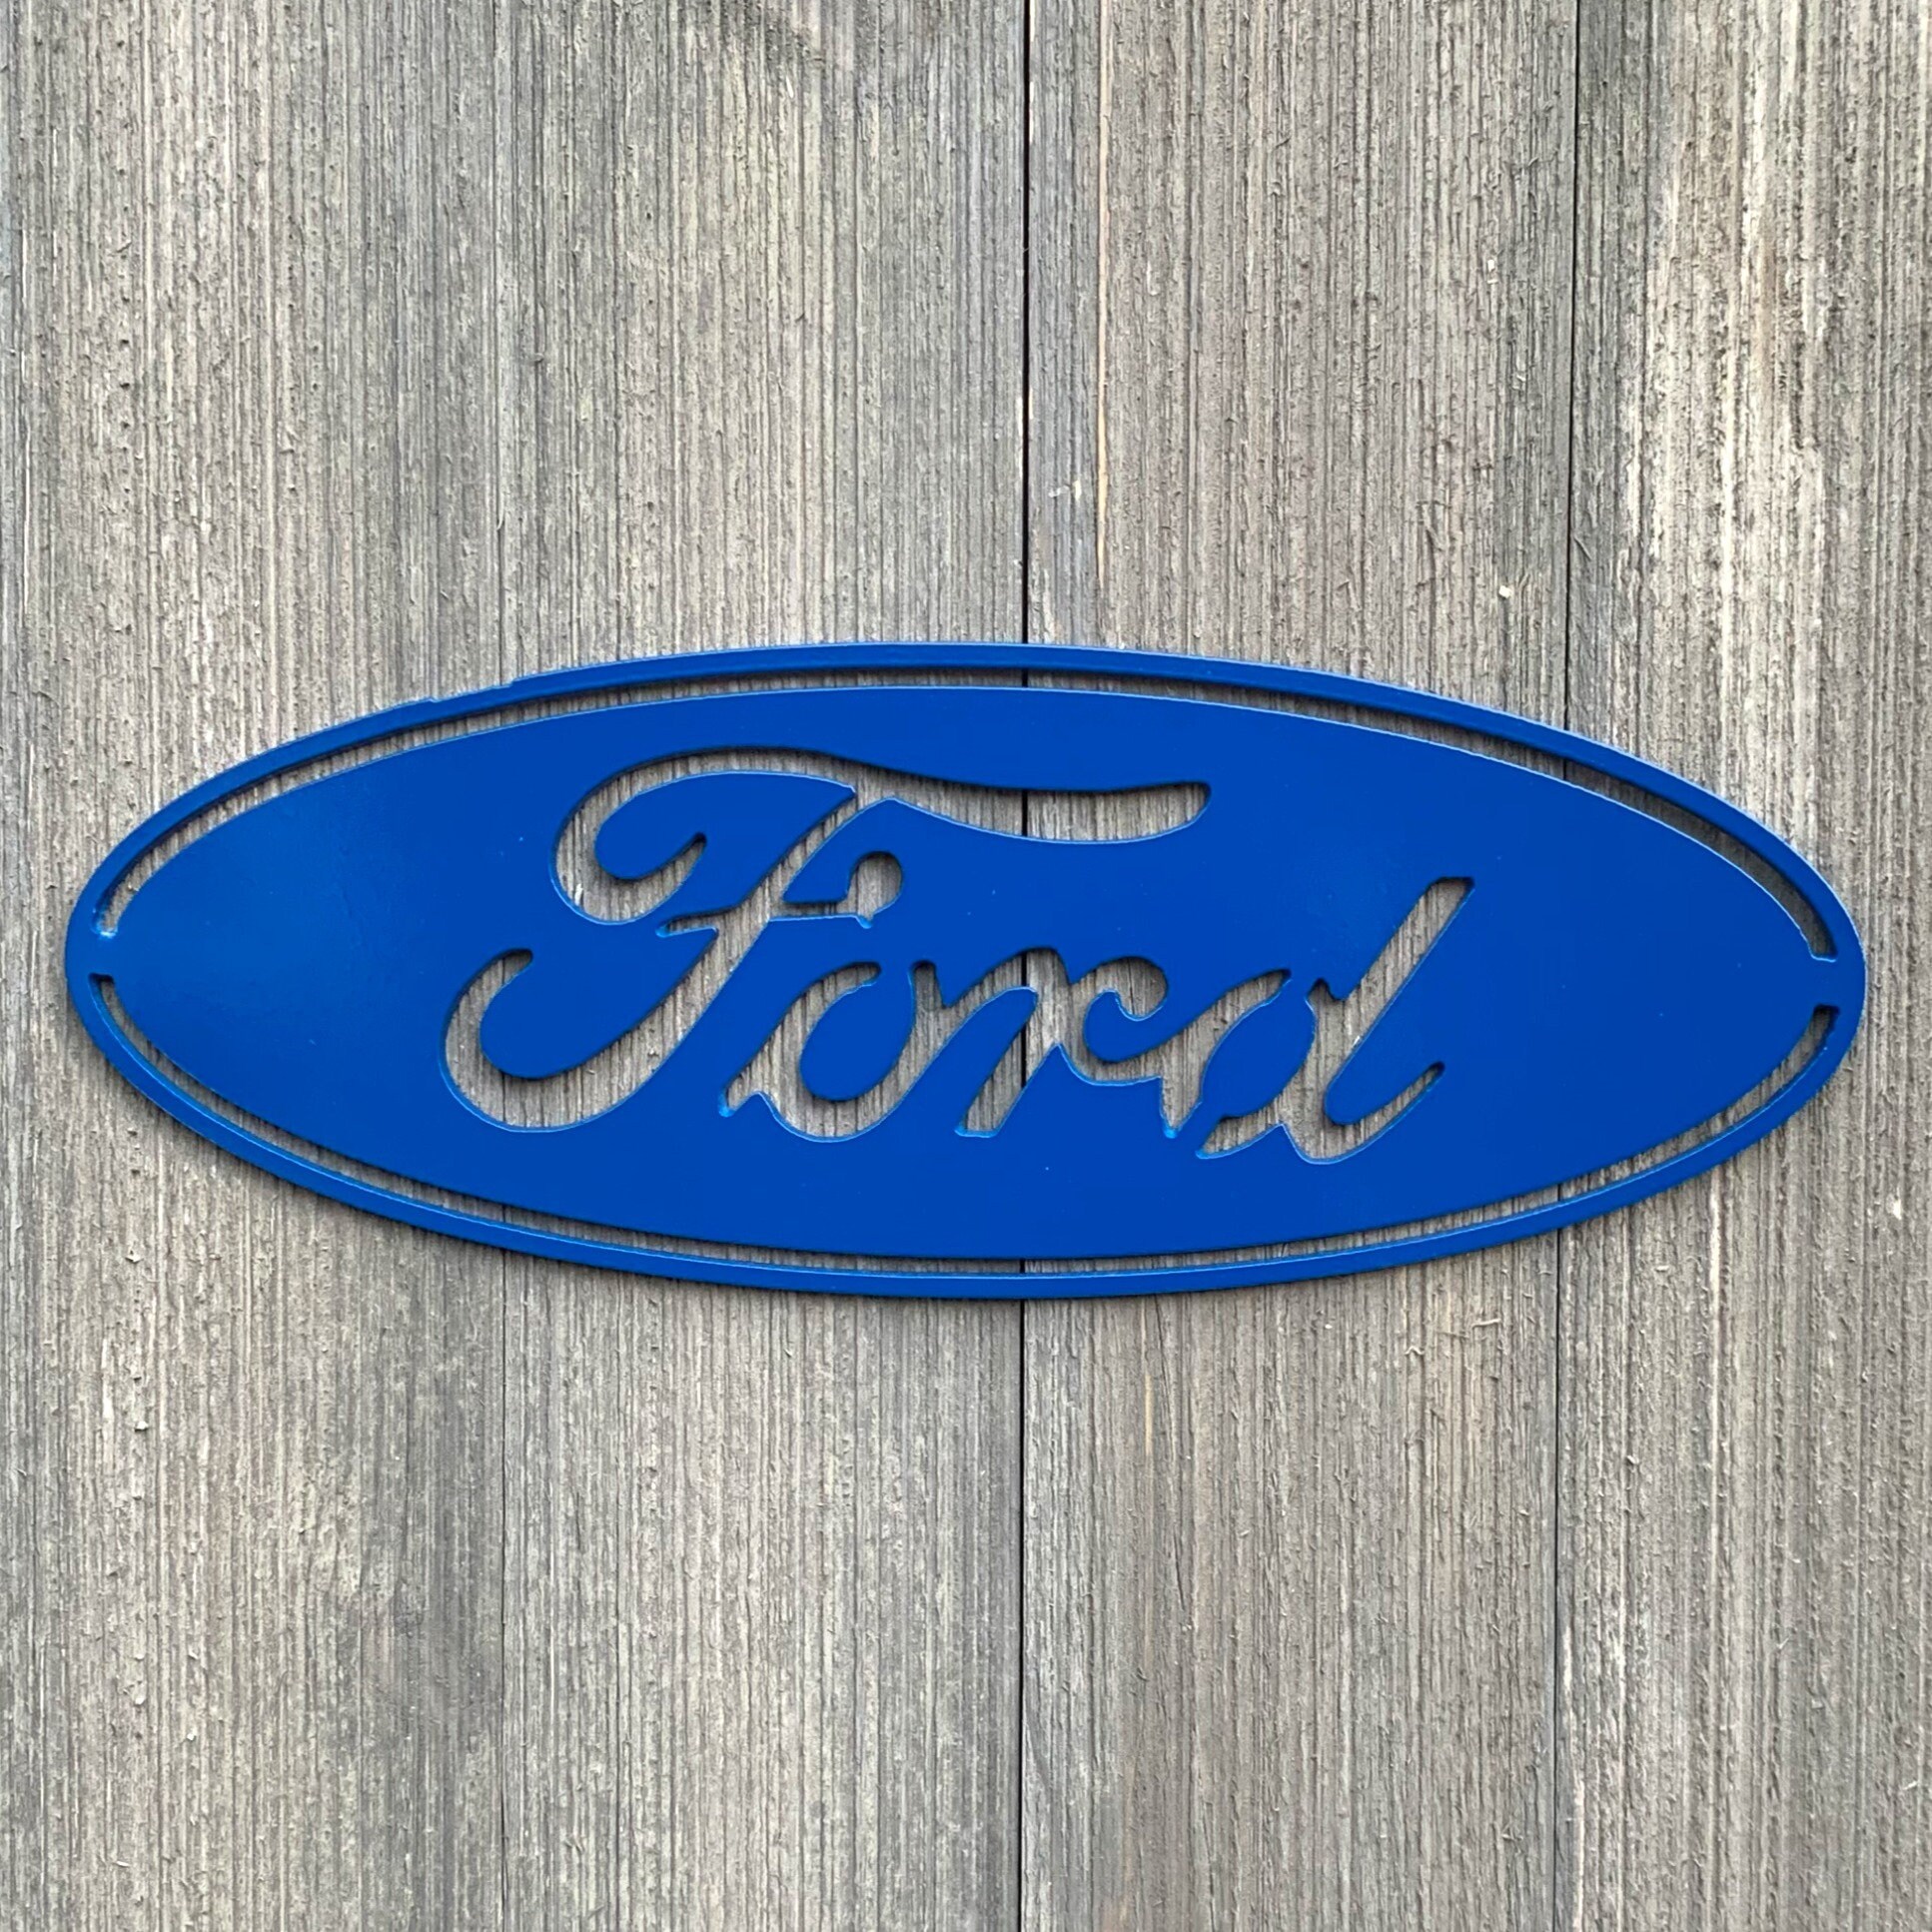 Ford Sign History Blechschild Schild gewölbt Metal Tin Sign 20 x 30 cm